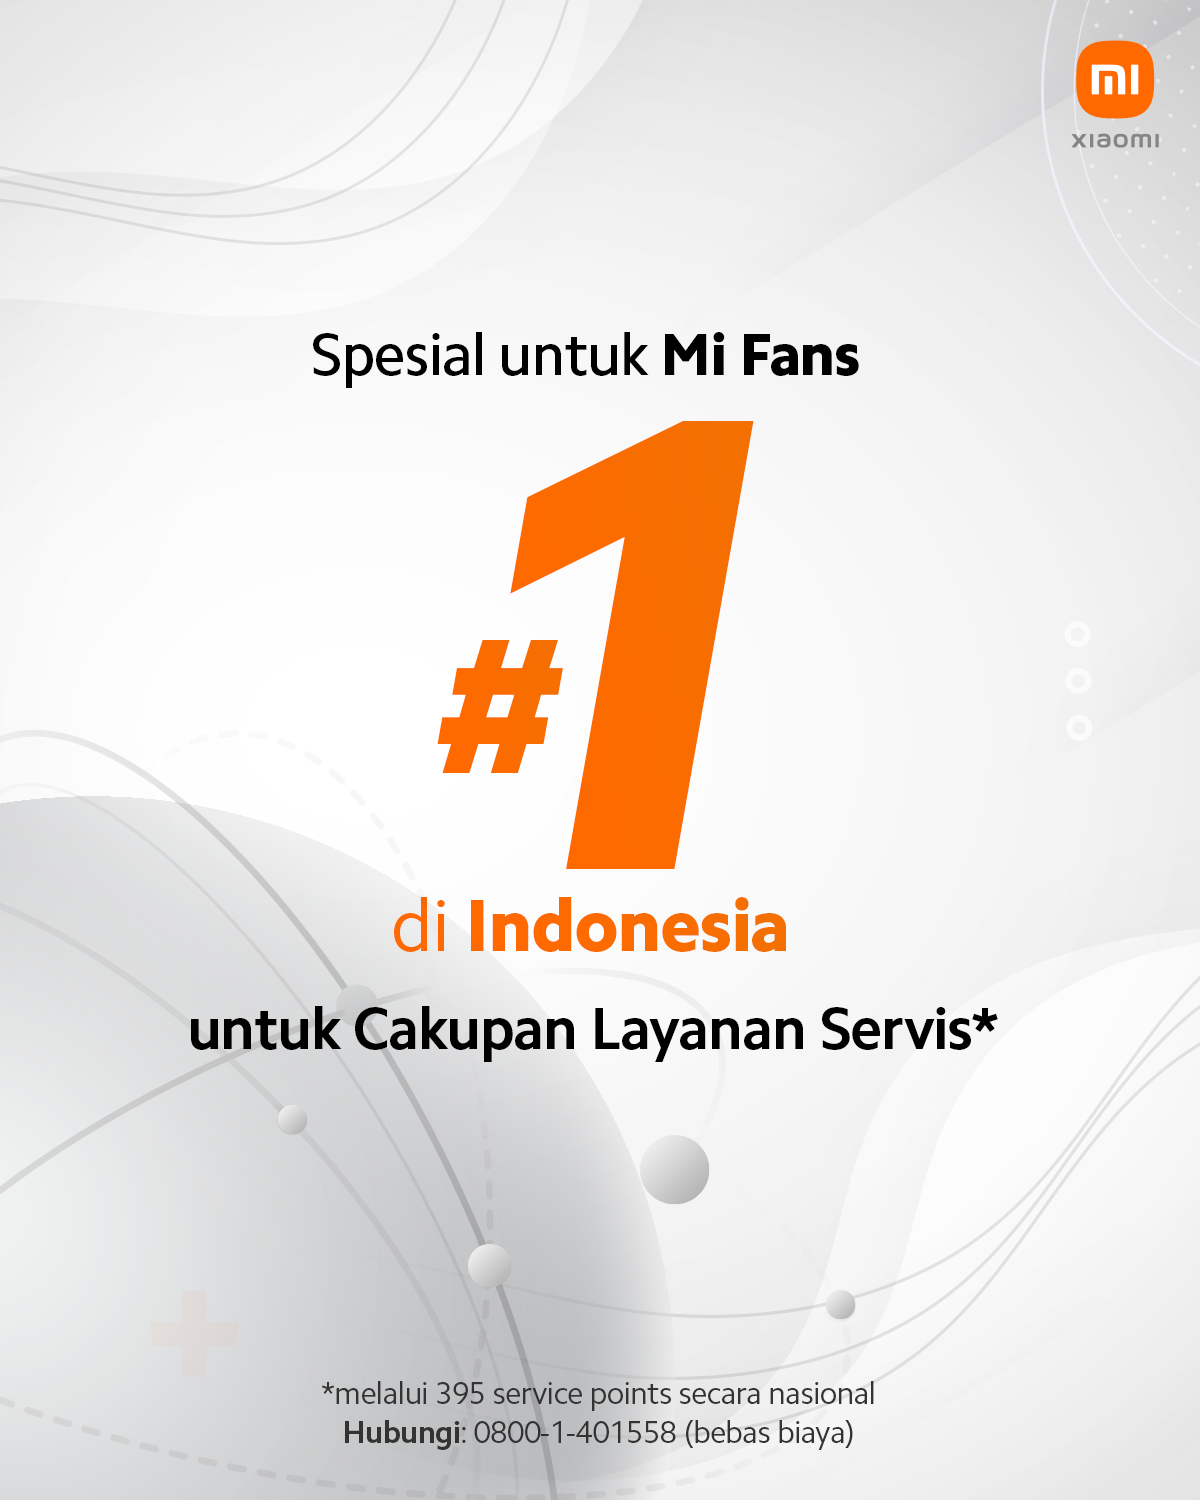 Xiaomi Hadirkan Cakupan Layanan Servis Terbaik di Indonesia